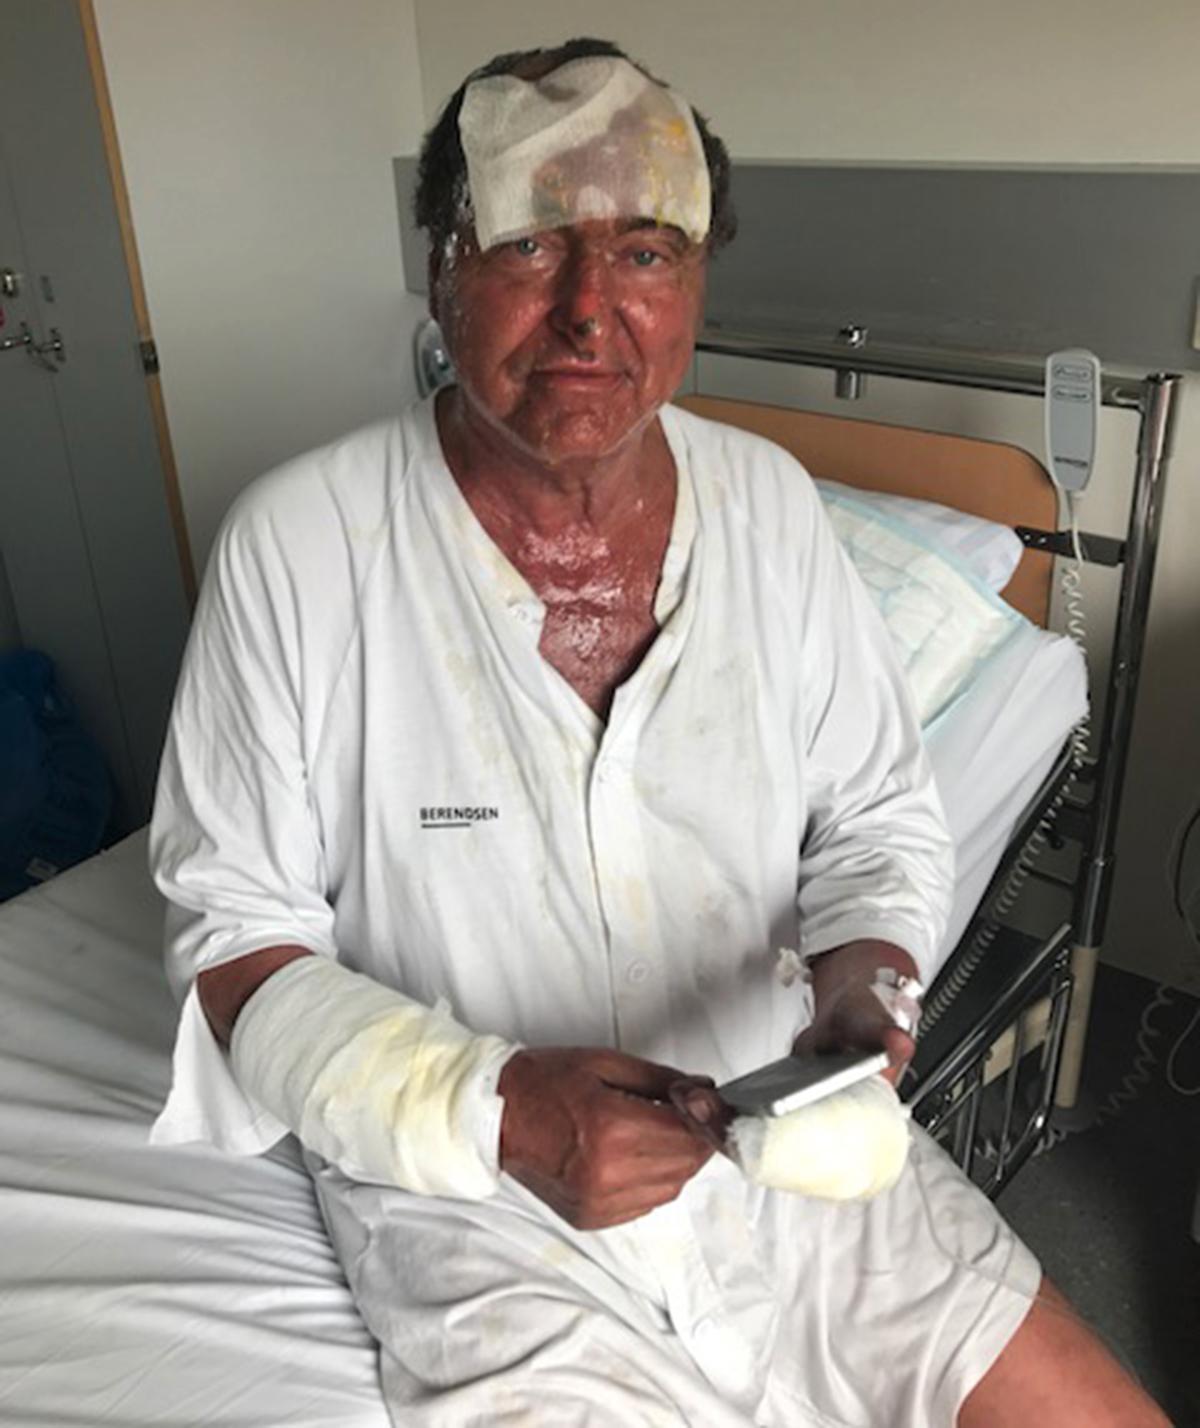 Uppfinnaren Anders Olsson, 71, skulle testa en ny apparat - som exploderade och orsakade storbrand.